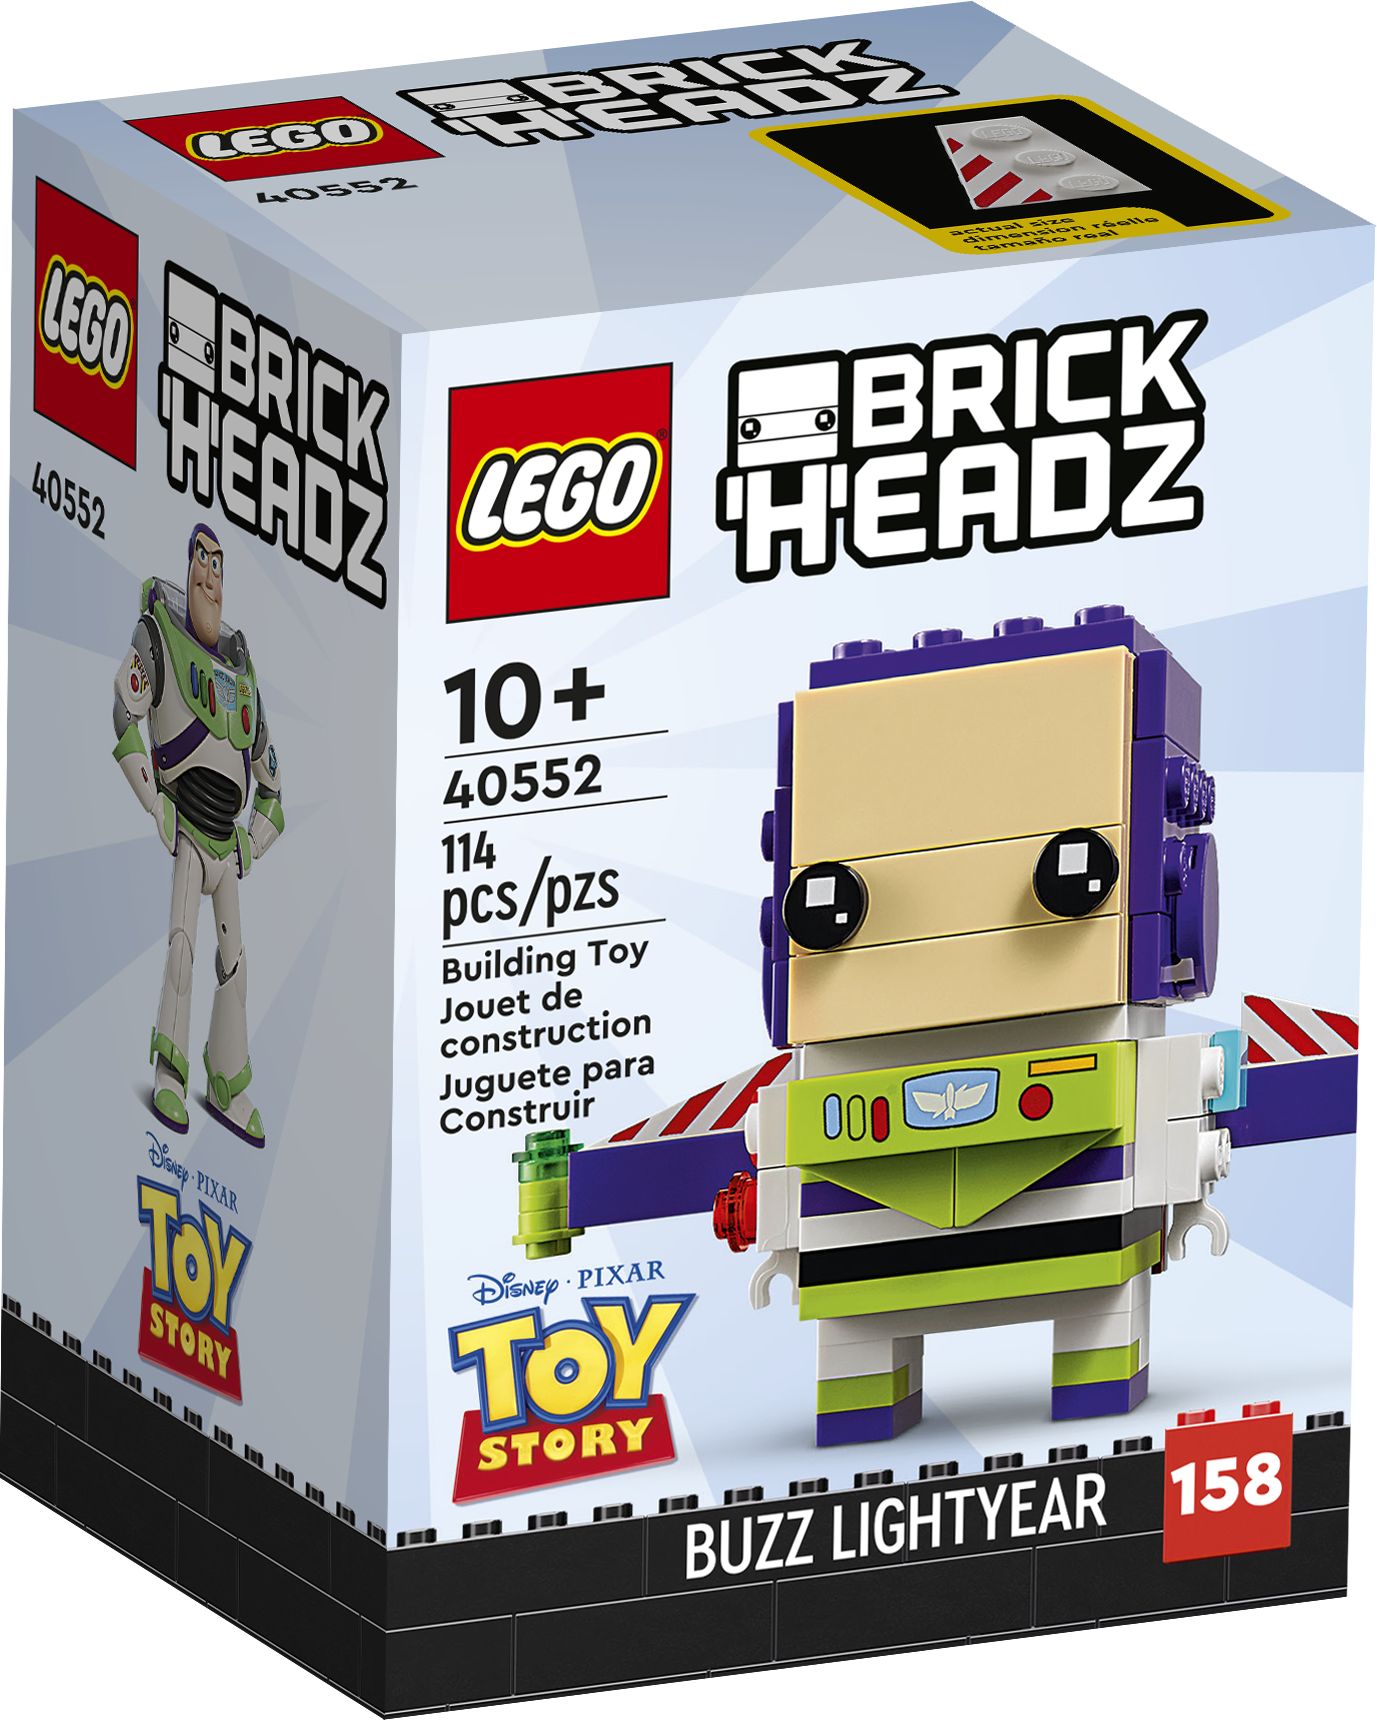 LEGO BrickHeadz 40552 Buzz Lightyear LEGO_40552_Box1_v39.jpg